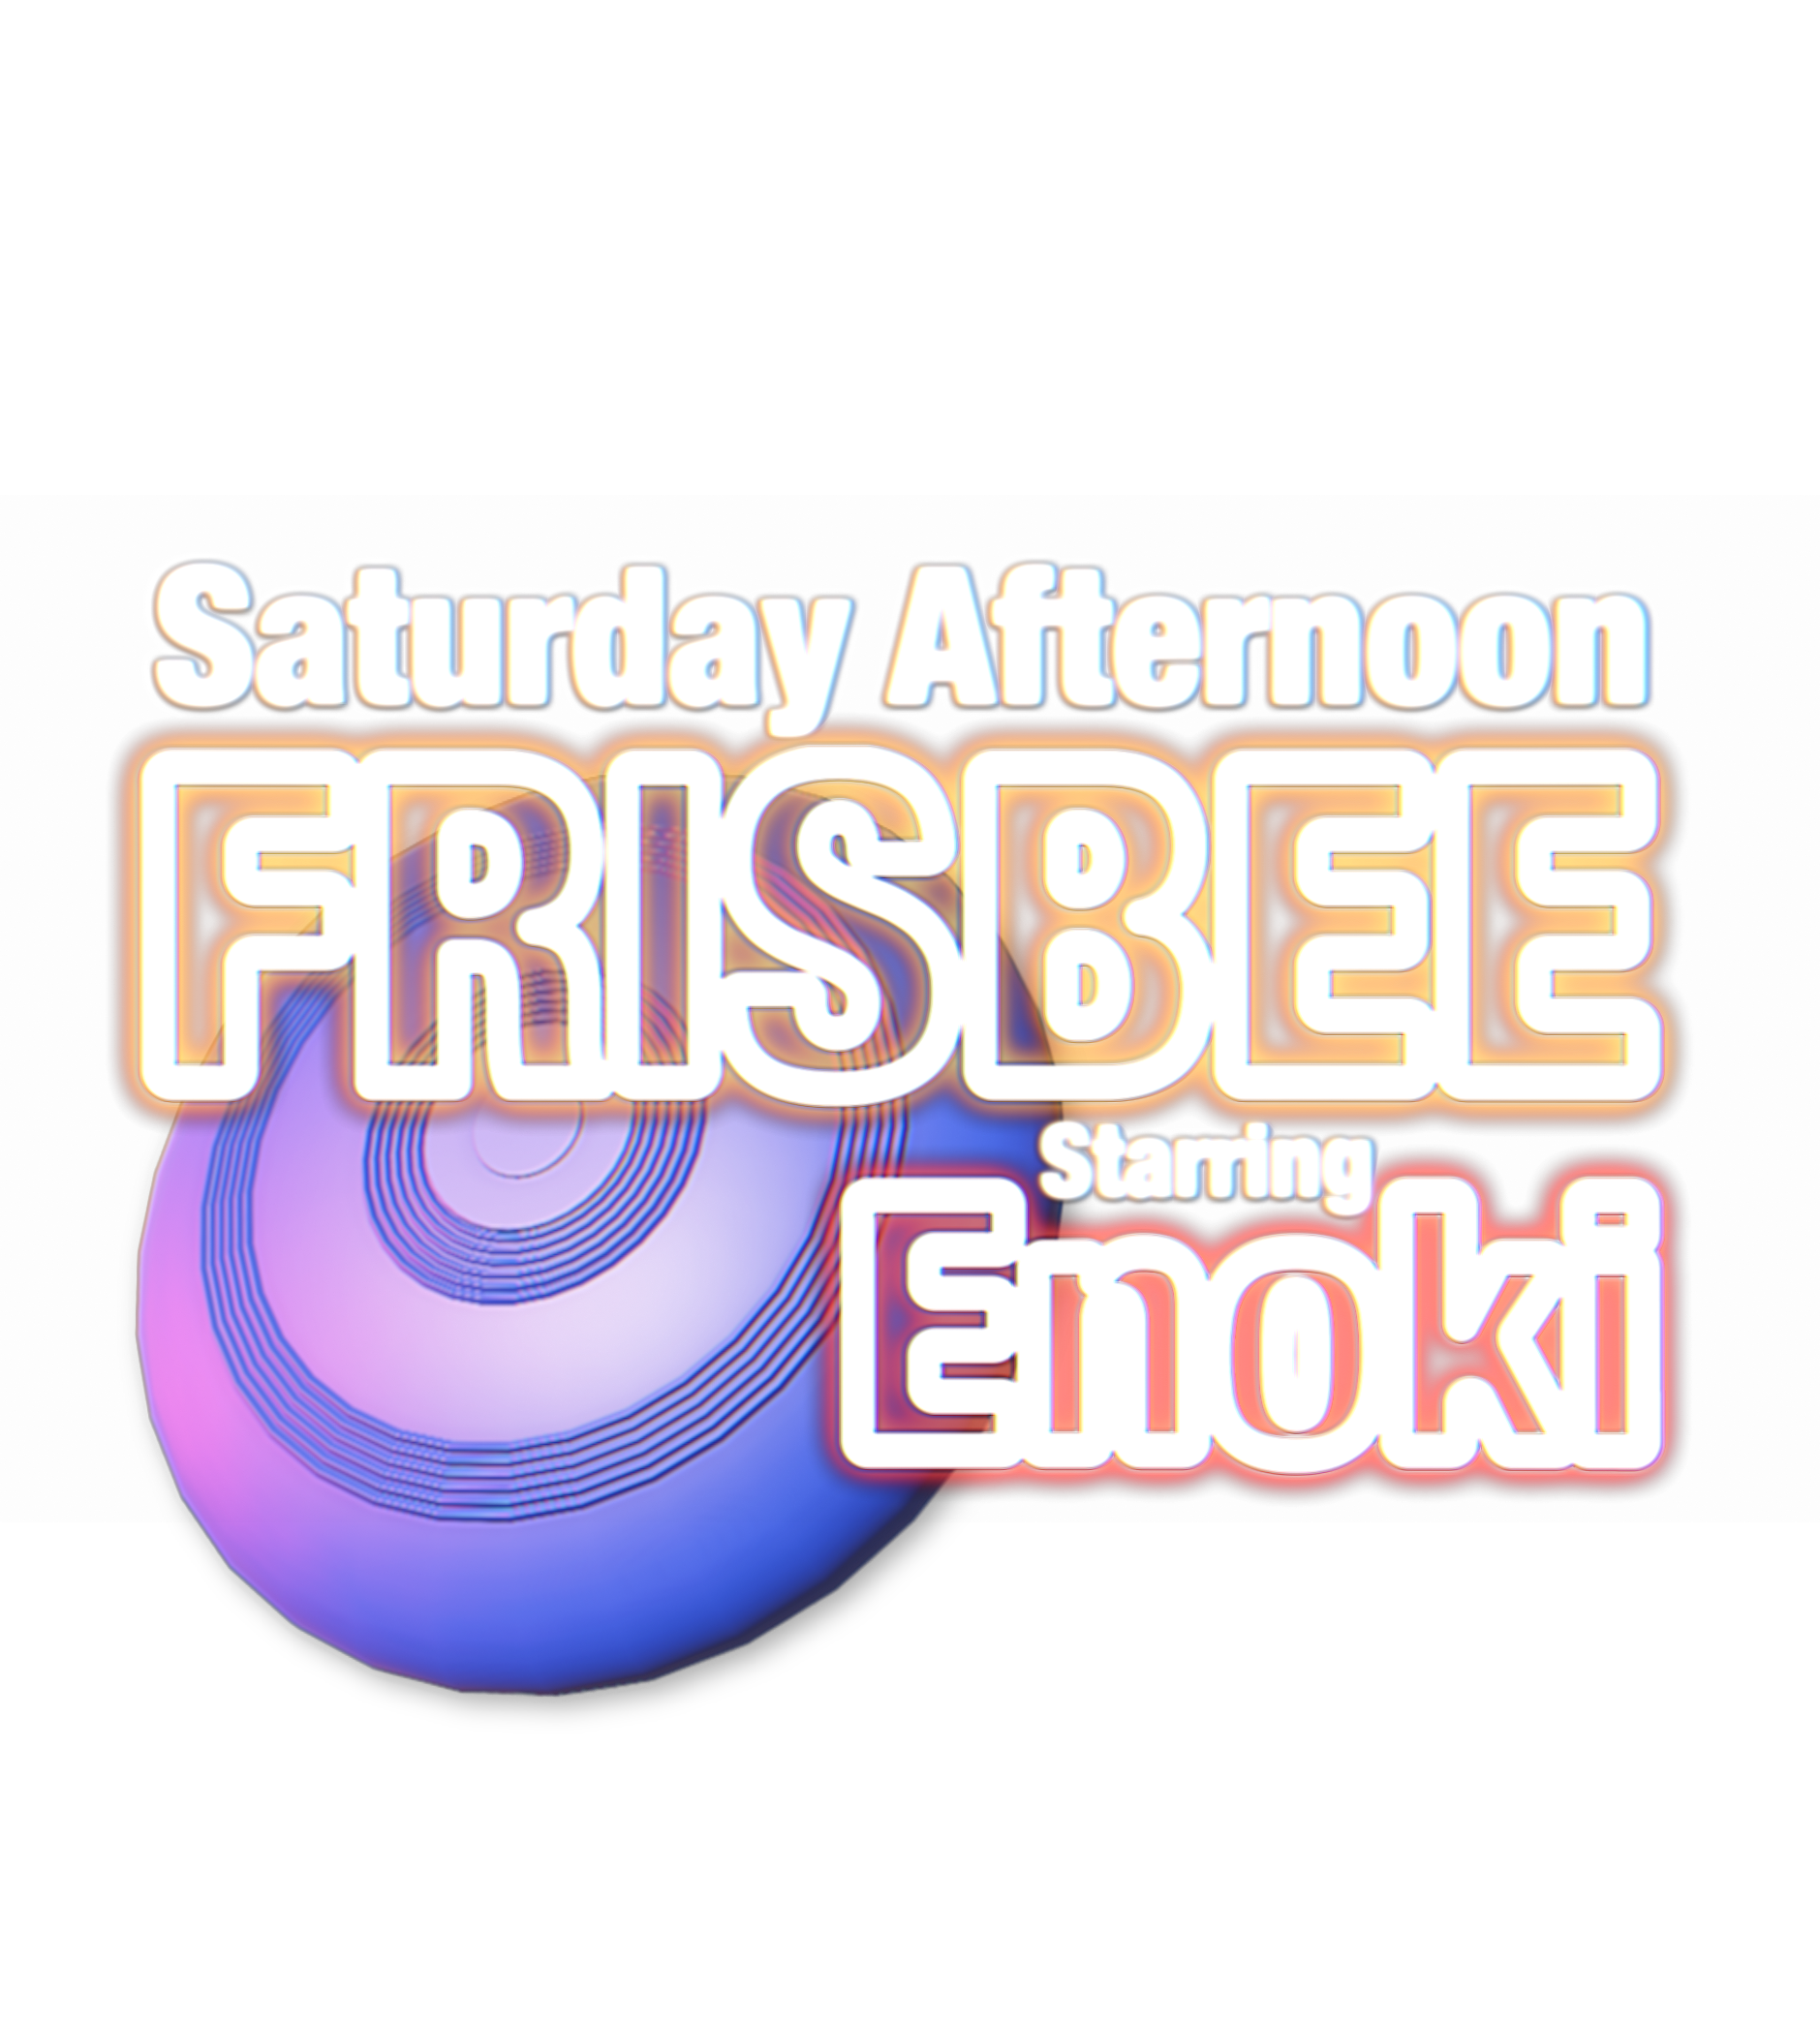 Saturday Afternoon Frisbee starring Enoki